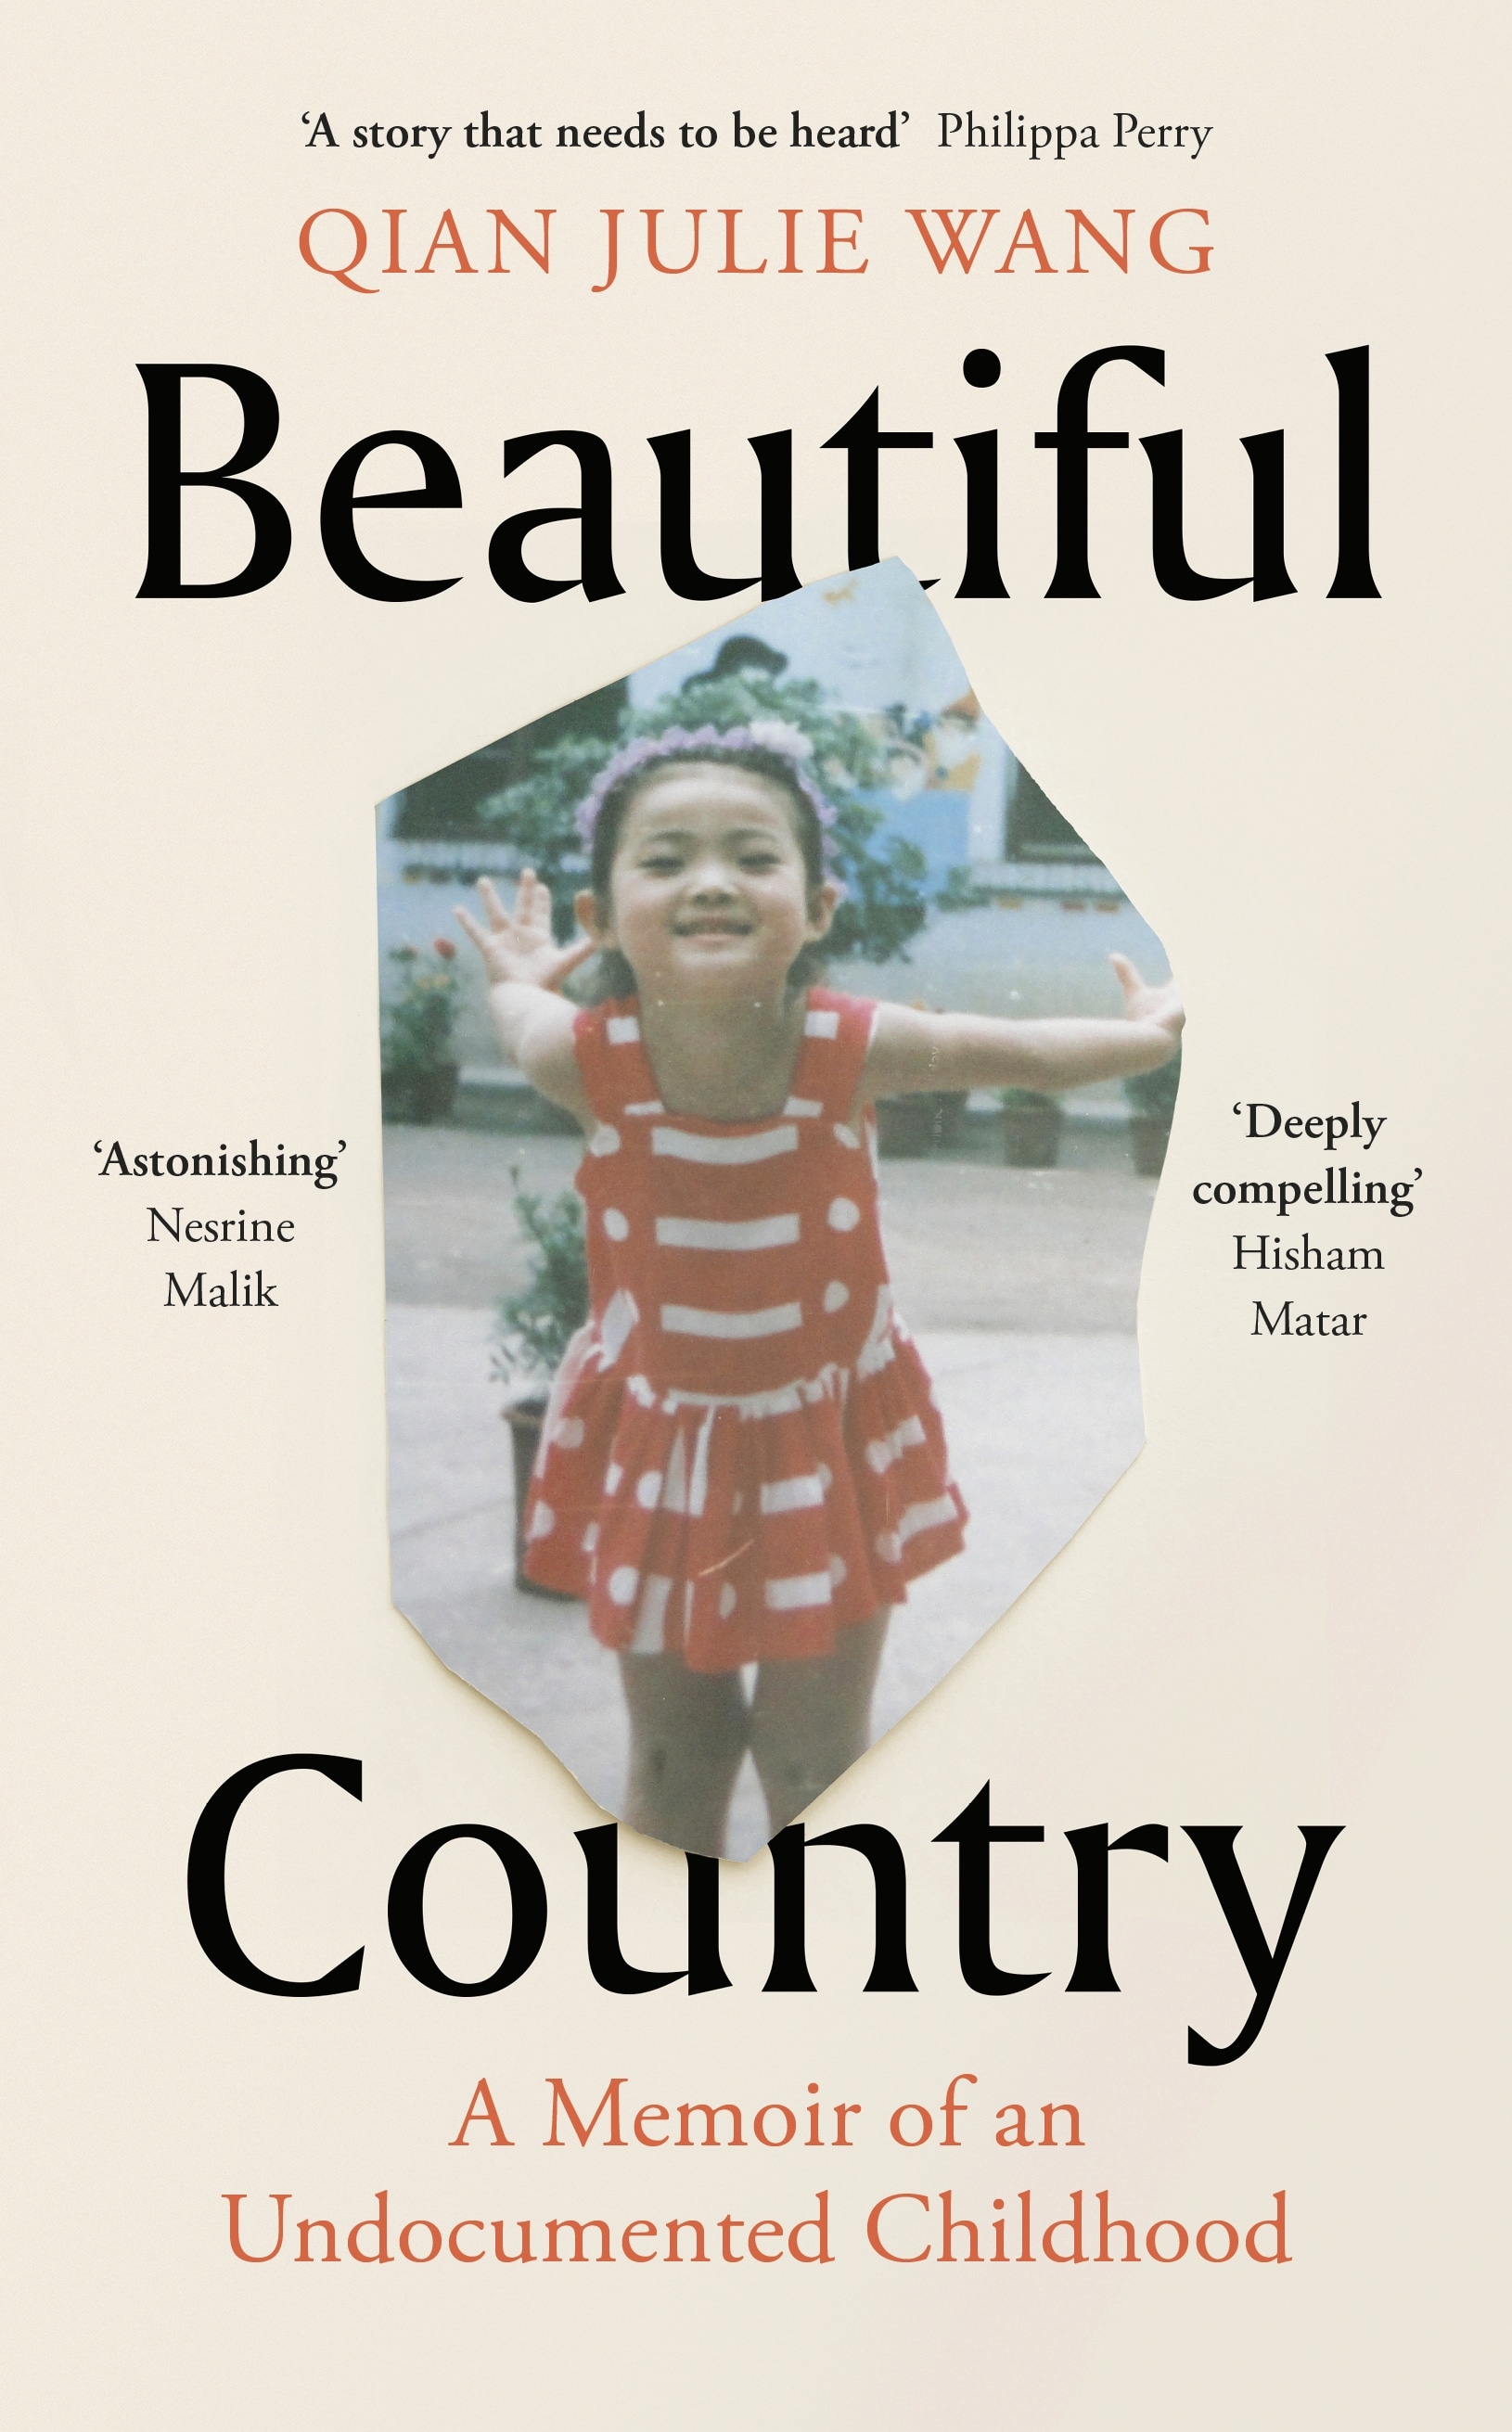 Book “Beautiful Country” by Qian Julie Wang — September 30, 2021